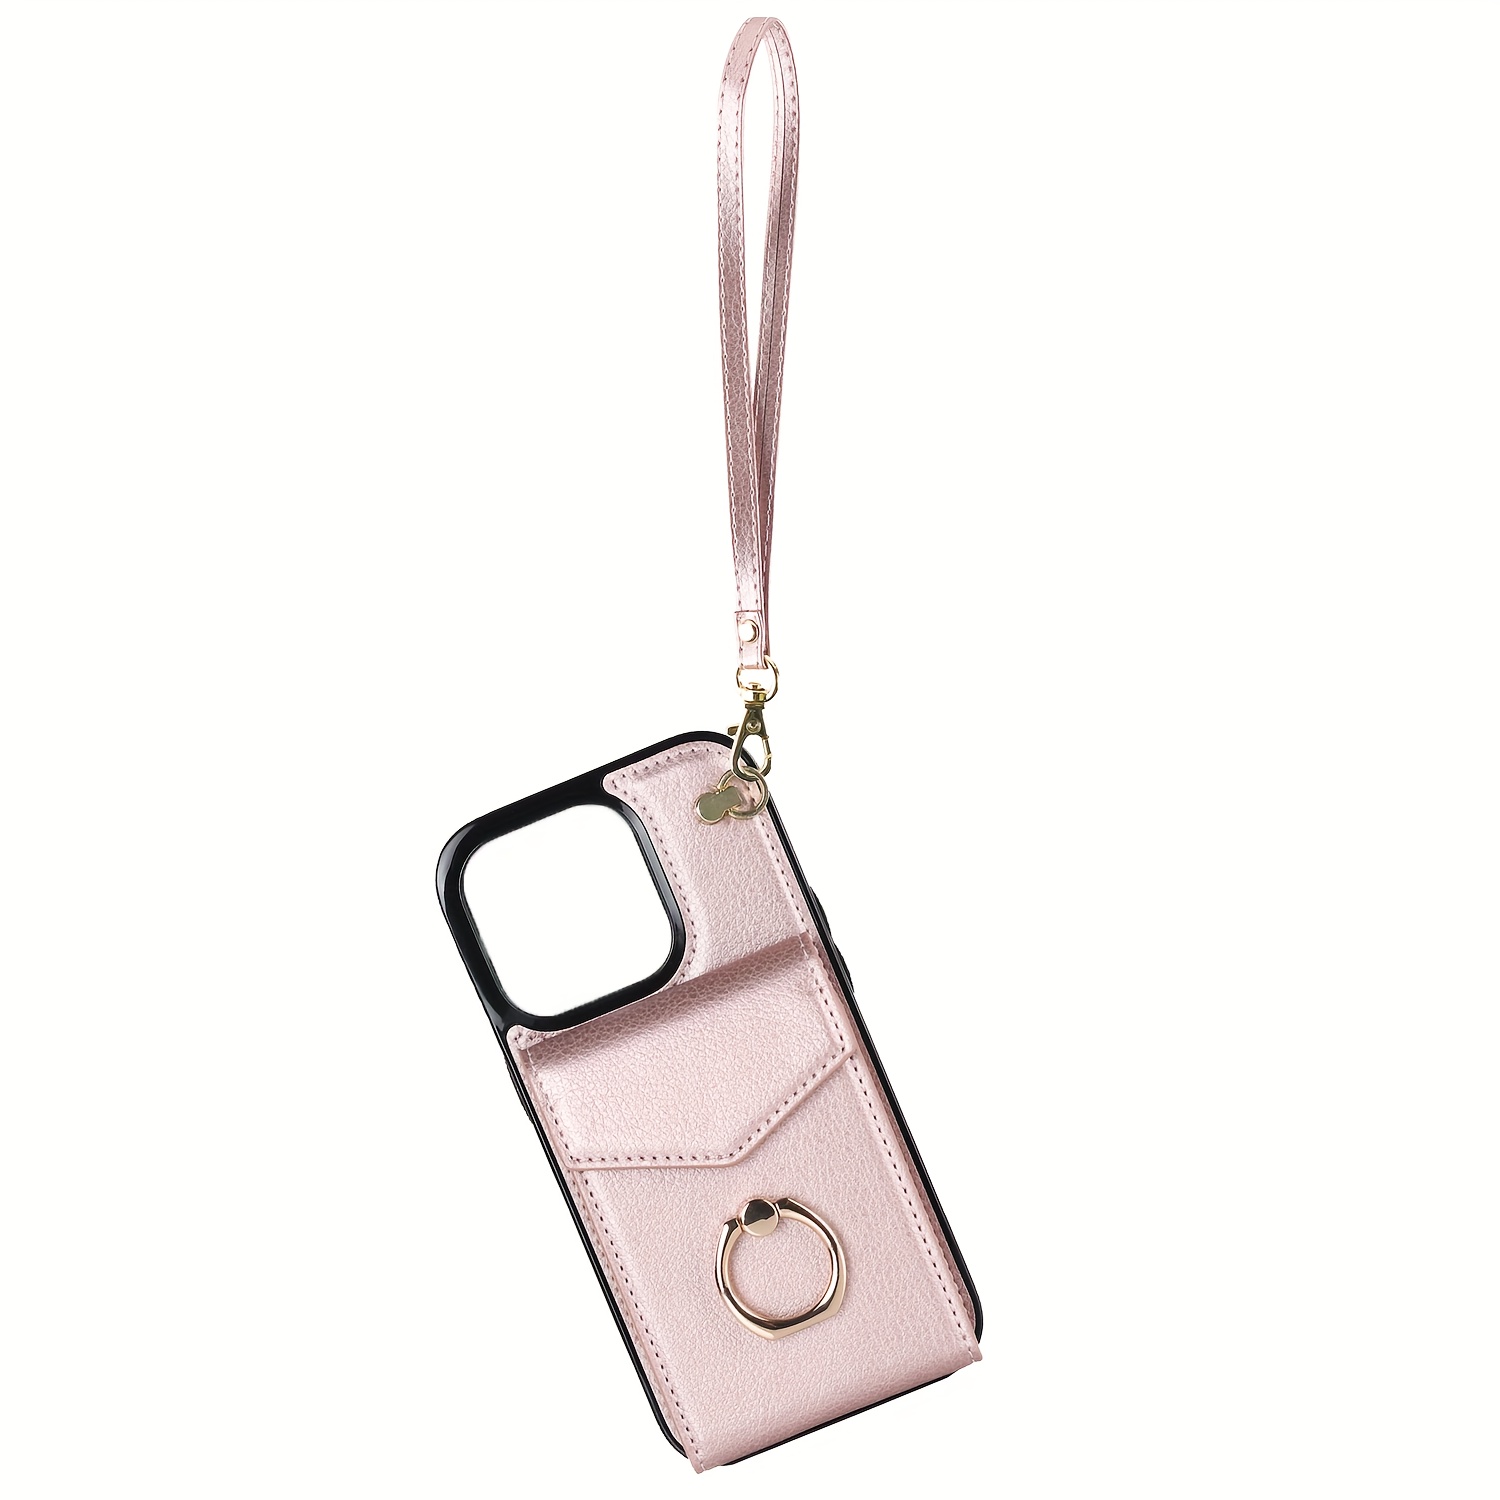 Louis Vuitton Wallet Case iPhone 11,12,13,14,15 iPhone 11,12,13,14